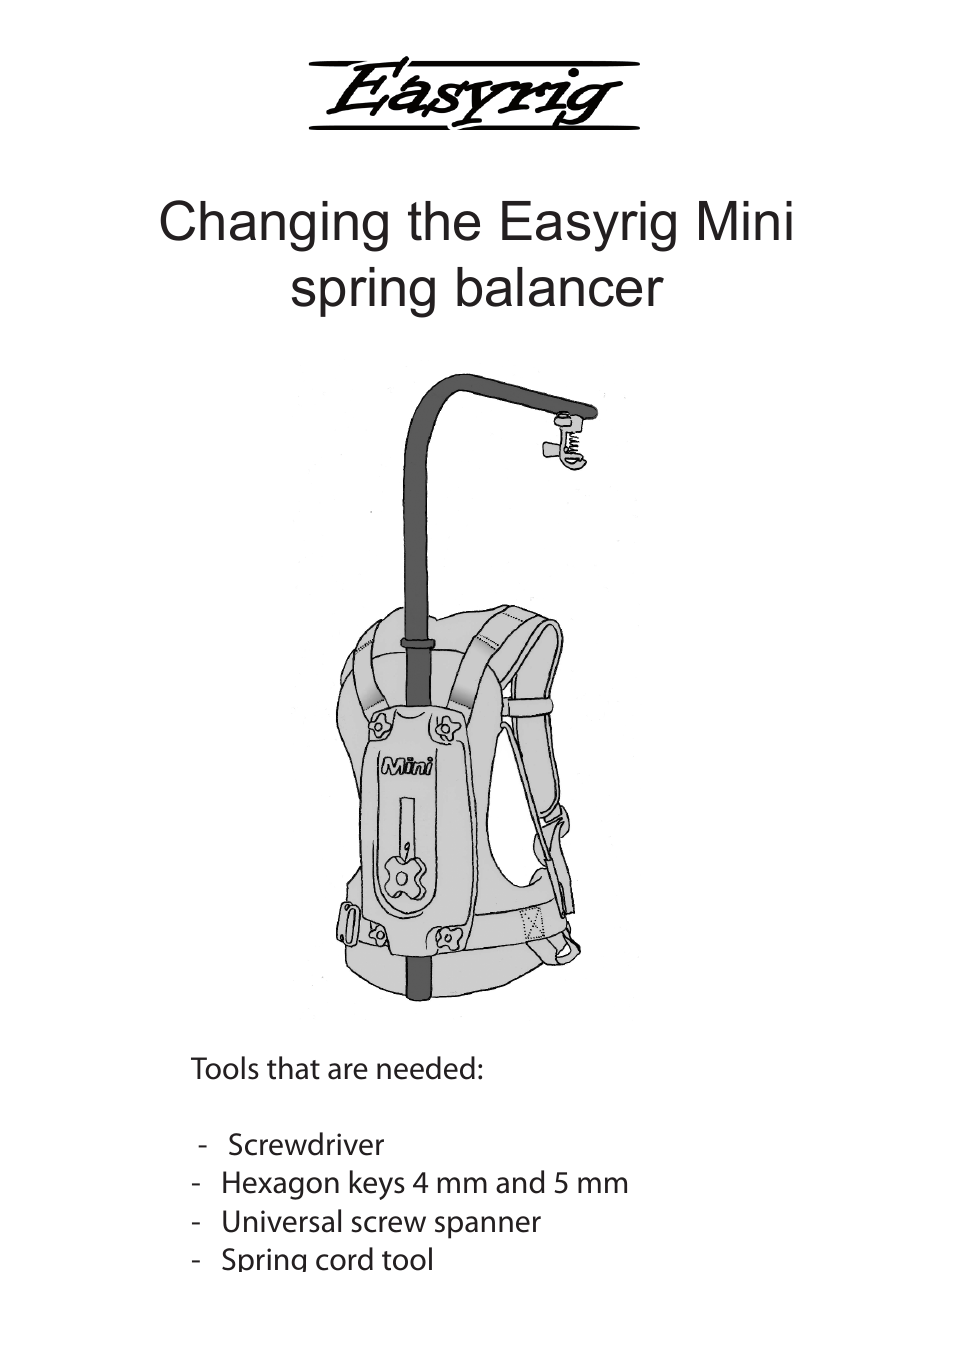 Changing Easyrig mini spring balancer